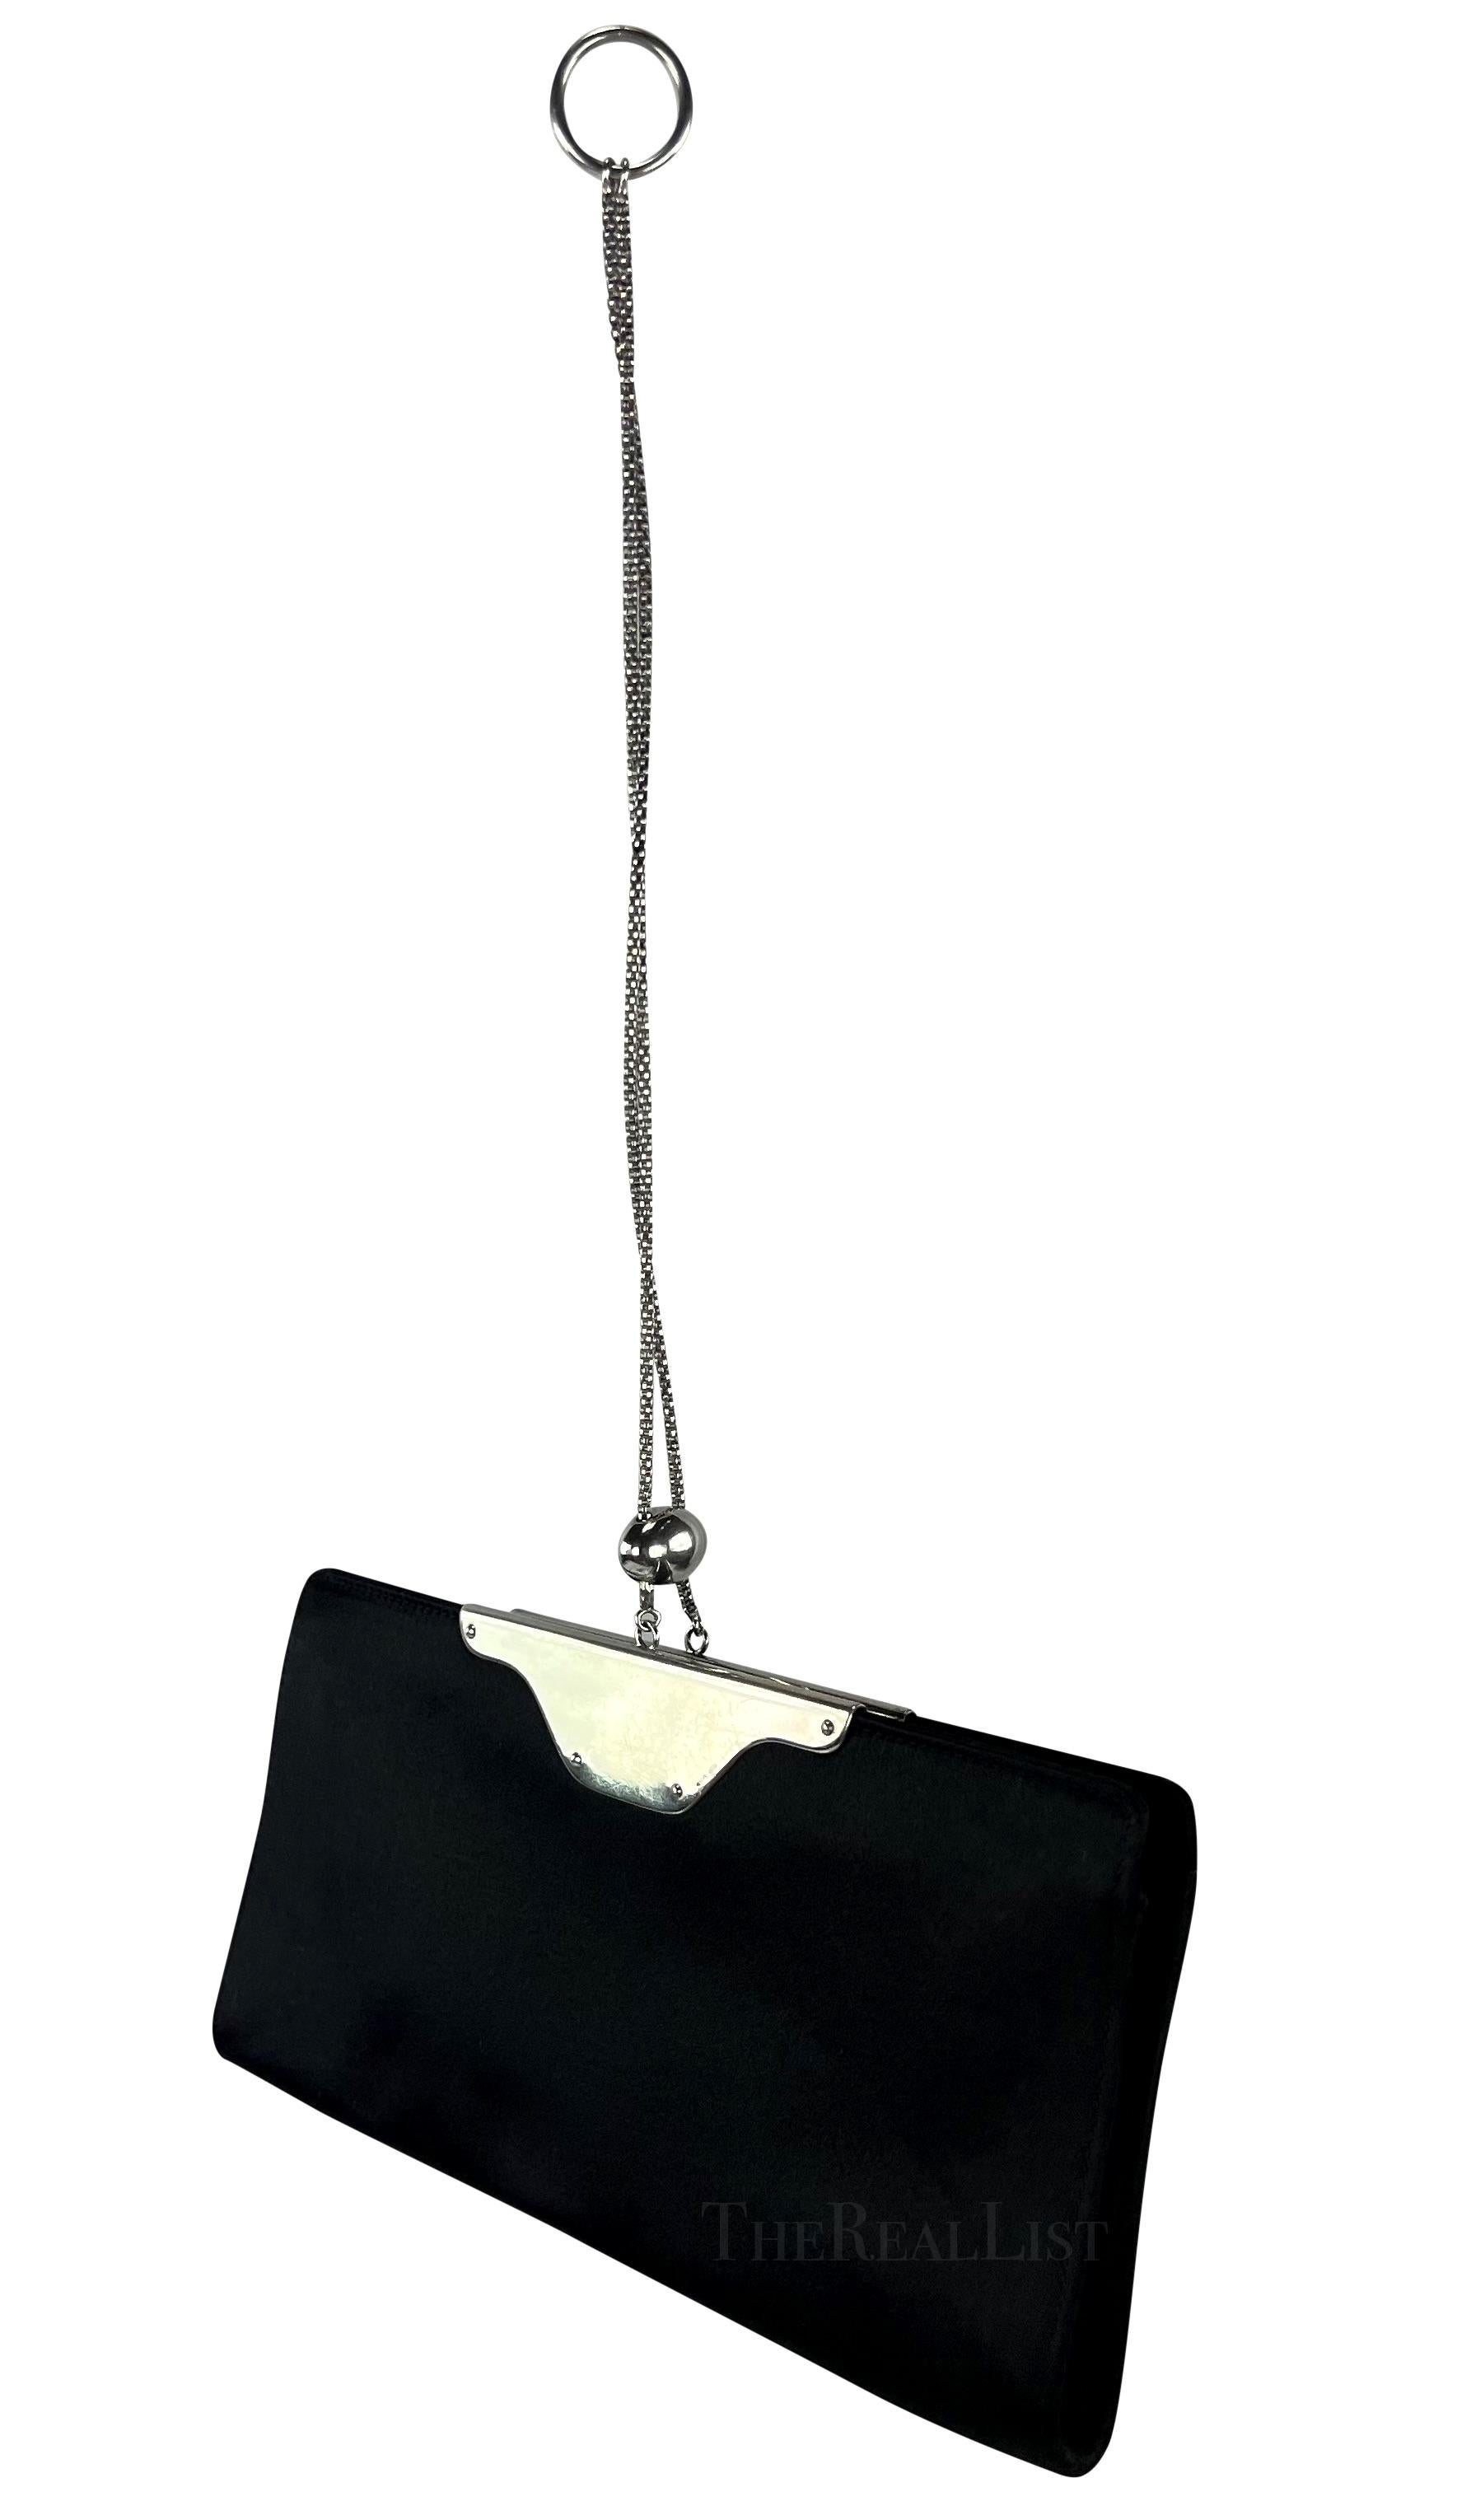 Ich präsentiere eine fabelhafte Yves Saint Laurent Ring-Ketten-Clutch aus schwarzem Satin. Gönnen Sie sich die exquisite Anziehungskraft der fabelhaften Yves Saint Laurent Ringketten-Clutch aus schwarzem Satin, ein echtes Modestatement aus der Mitte